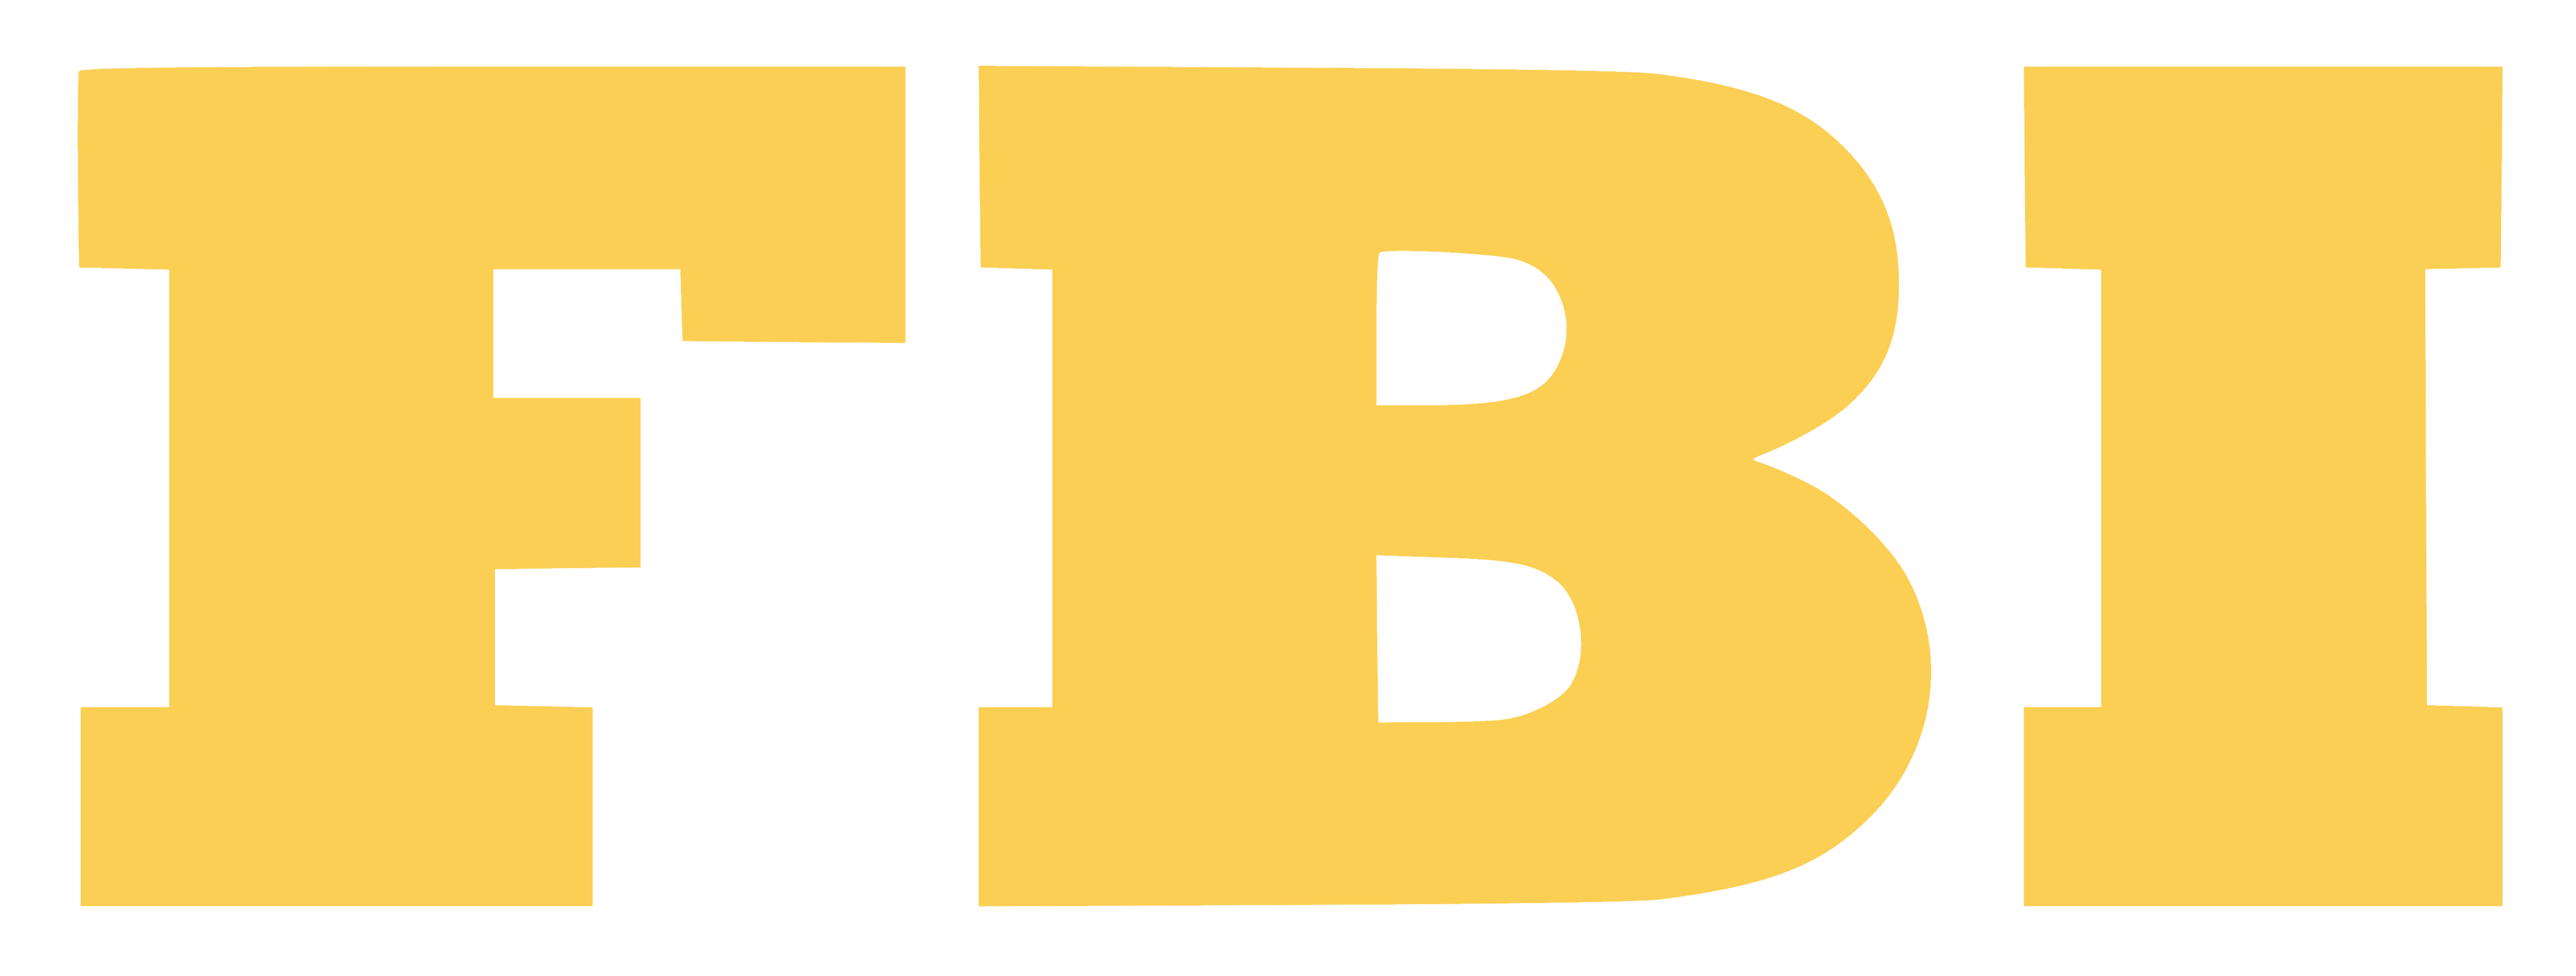 FBI Logo - FBI – Logos Download